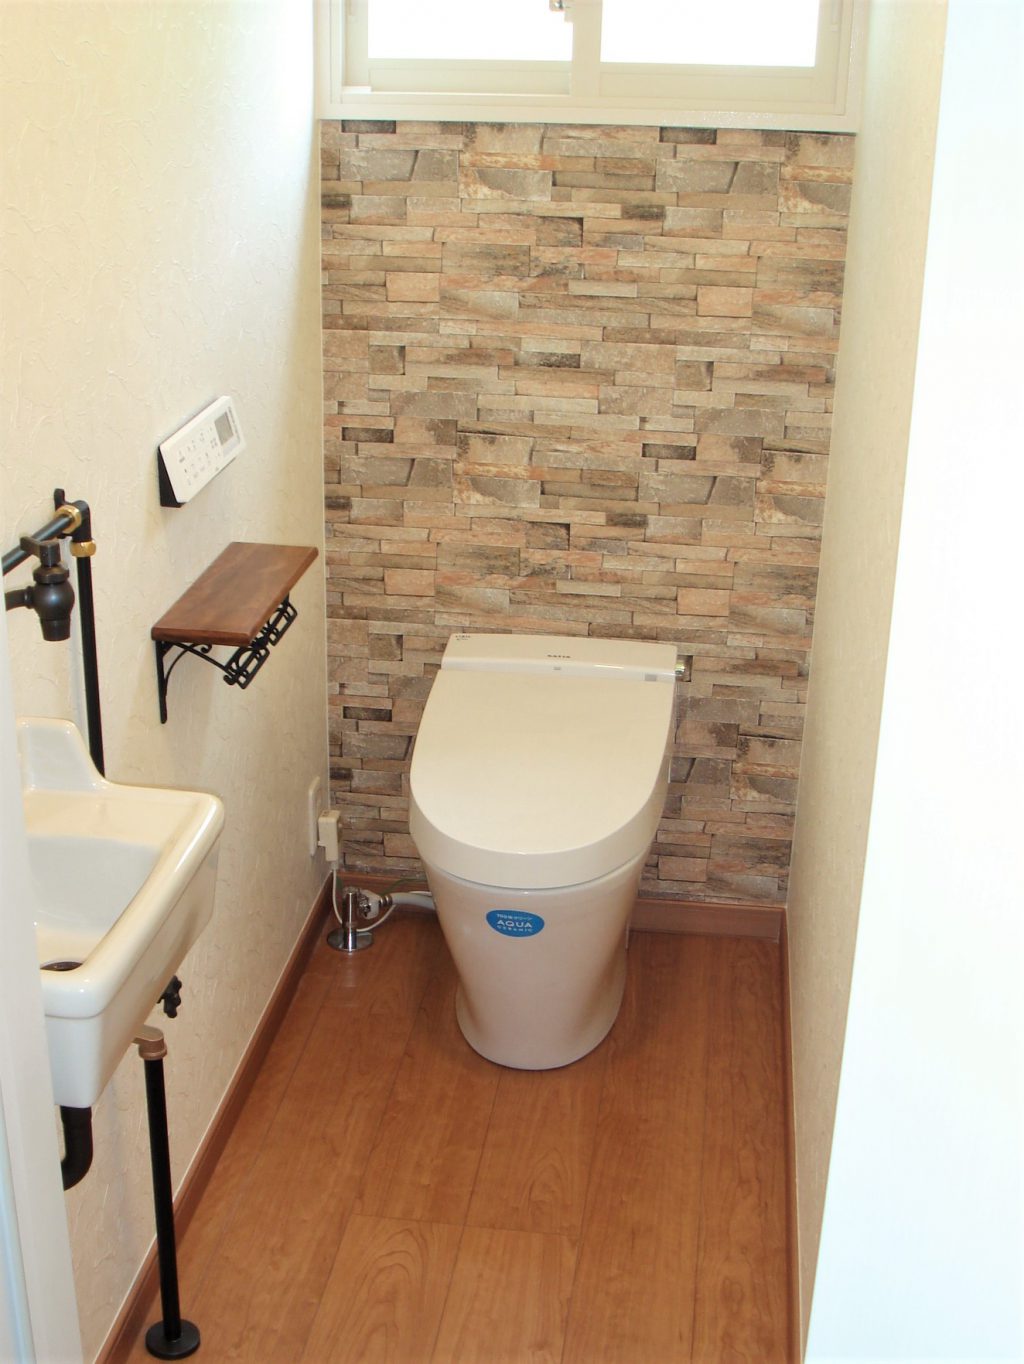 トイレの壁紙は ちょっと冒険しよう ヤマシナのリフォーム 千葉県鎌ケ谷市 船橋市でリフォームなら